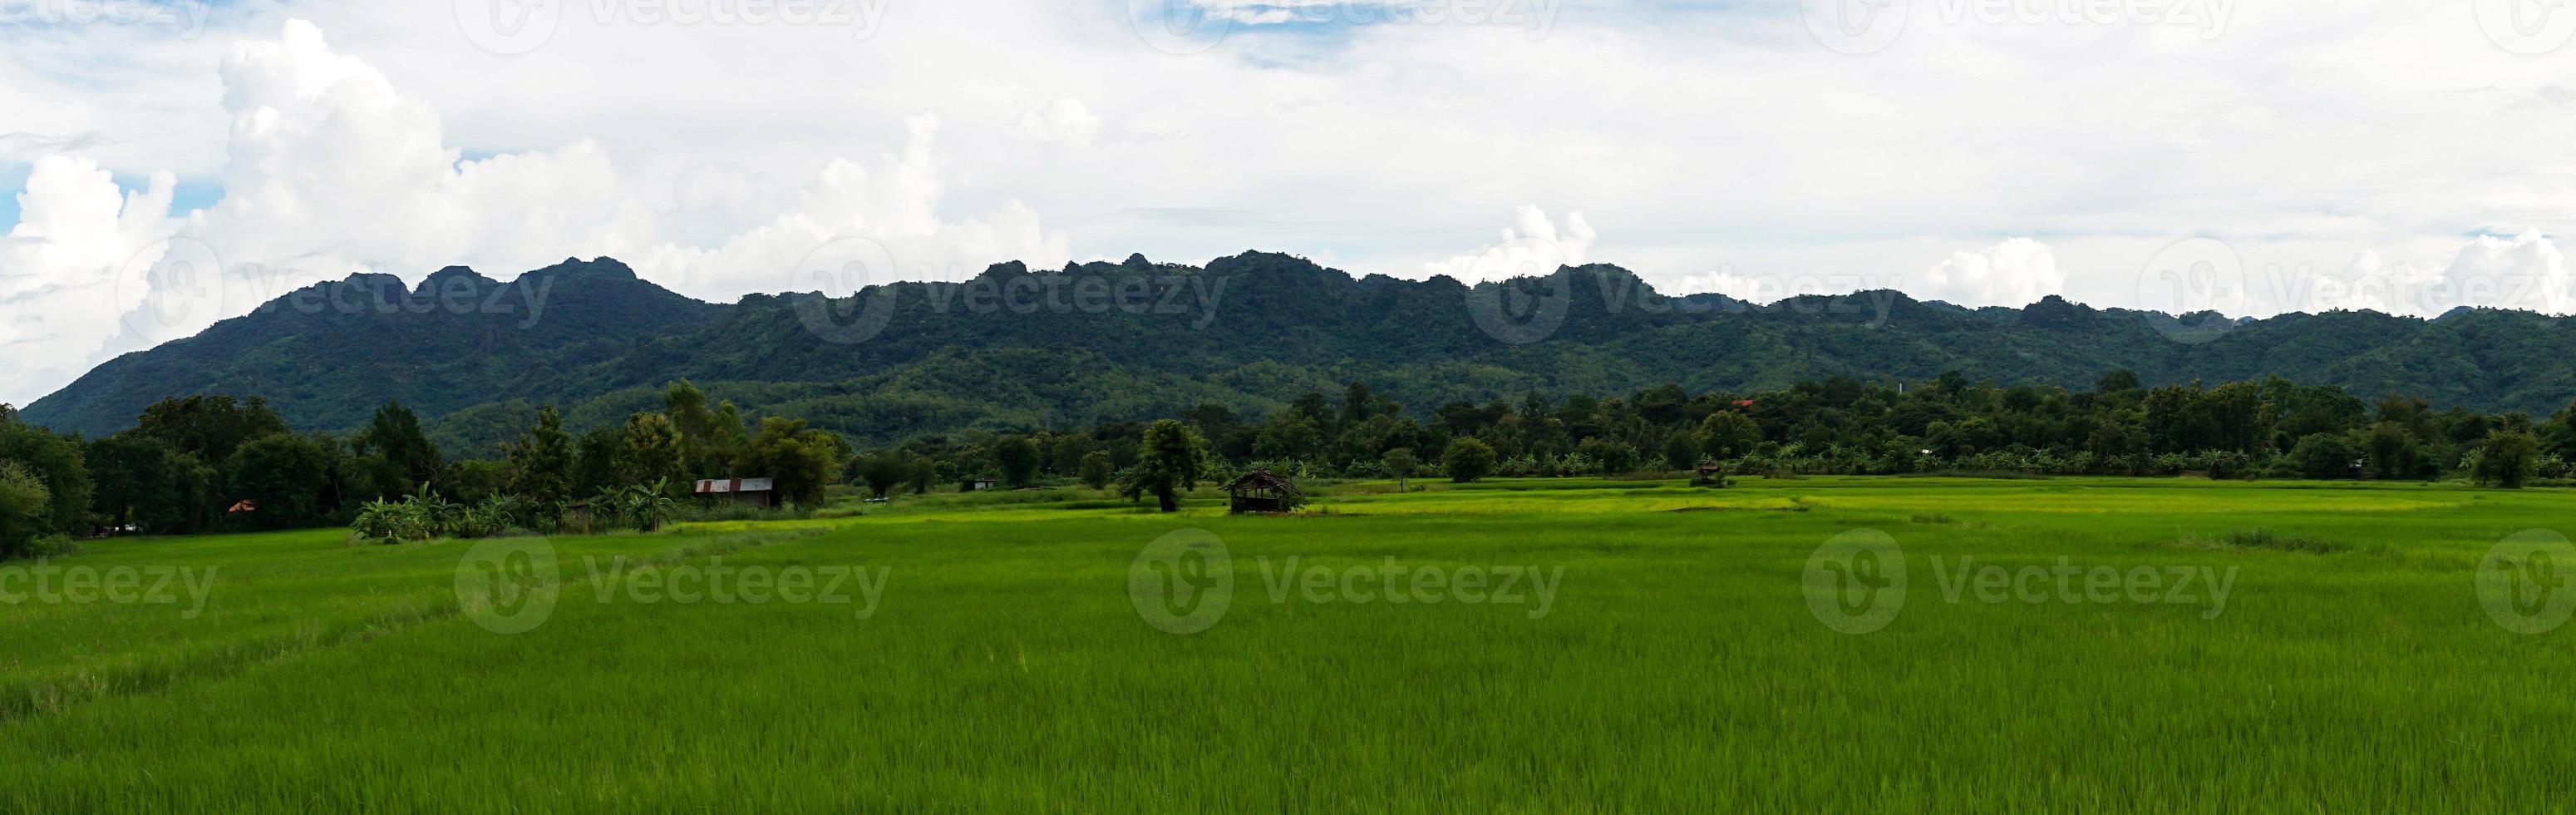 campo de arroz verde com fundo de montanha sob céu nublado após chuva na estação chuvosa, campo de arroz de vista panorâmica. foto